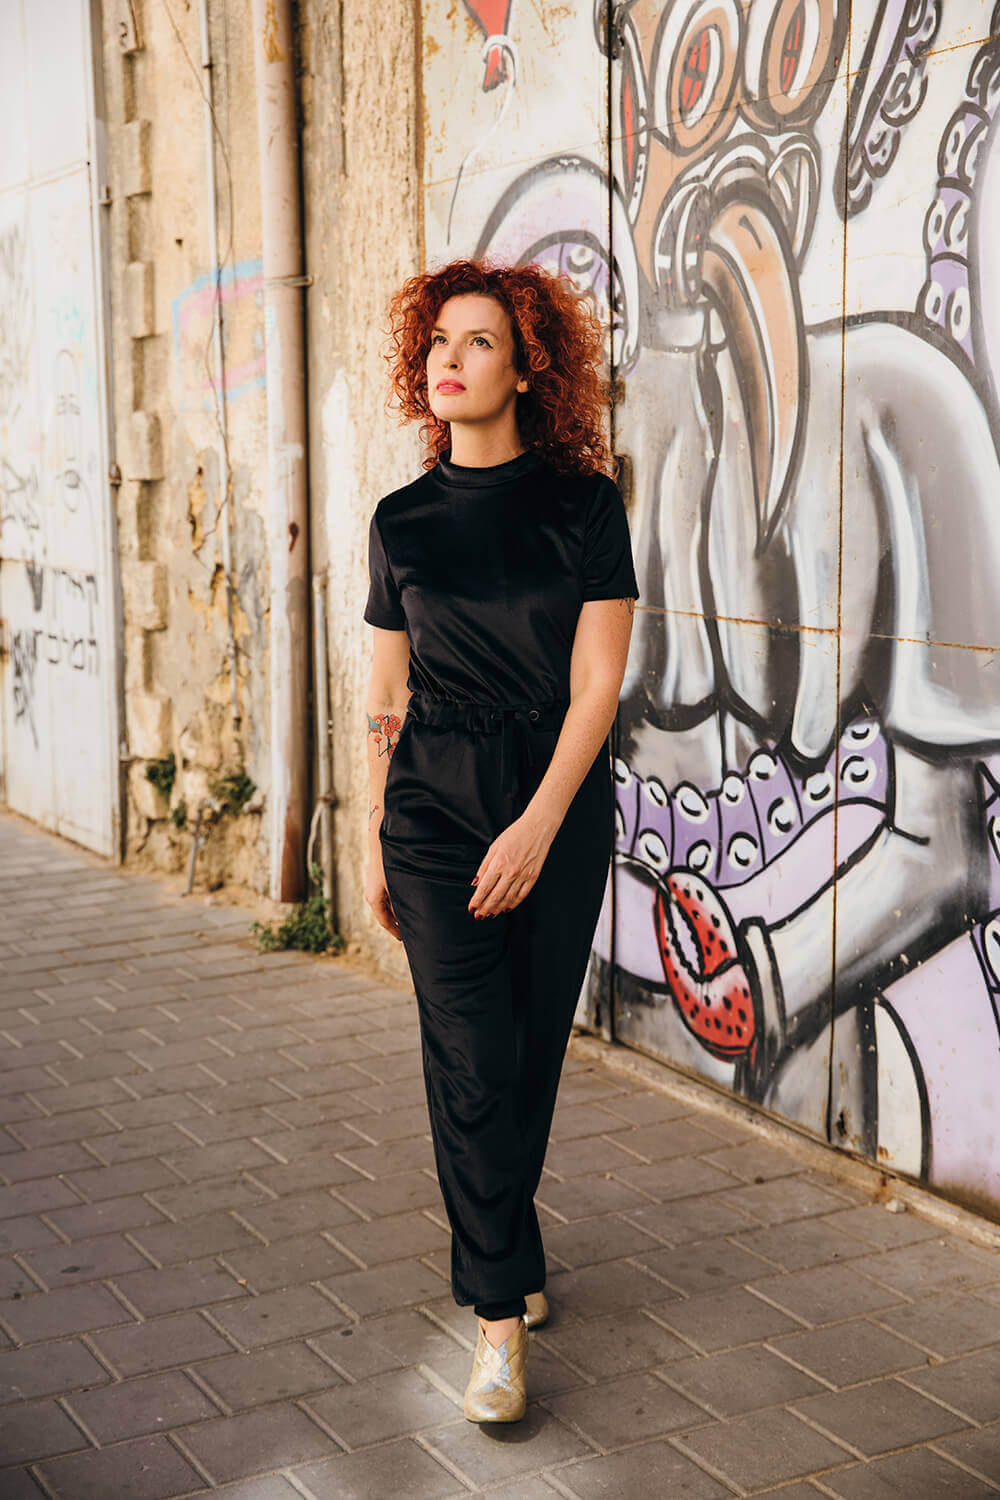 אופנה ישראלית בבלוג תלתלים